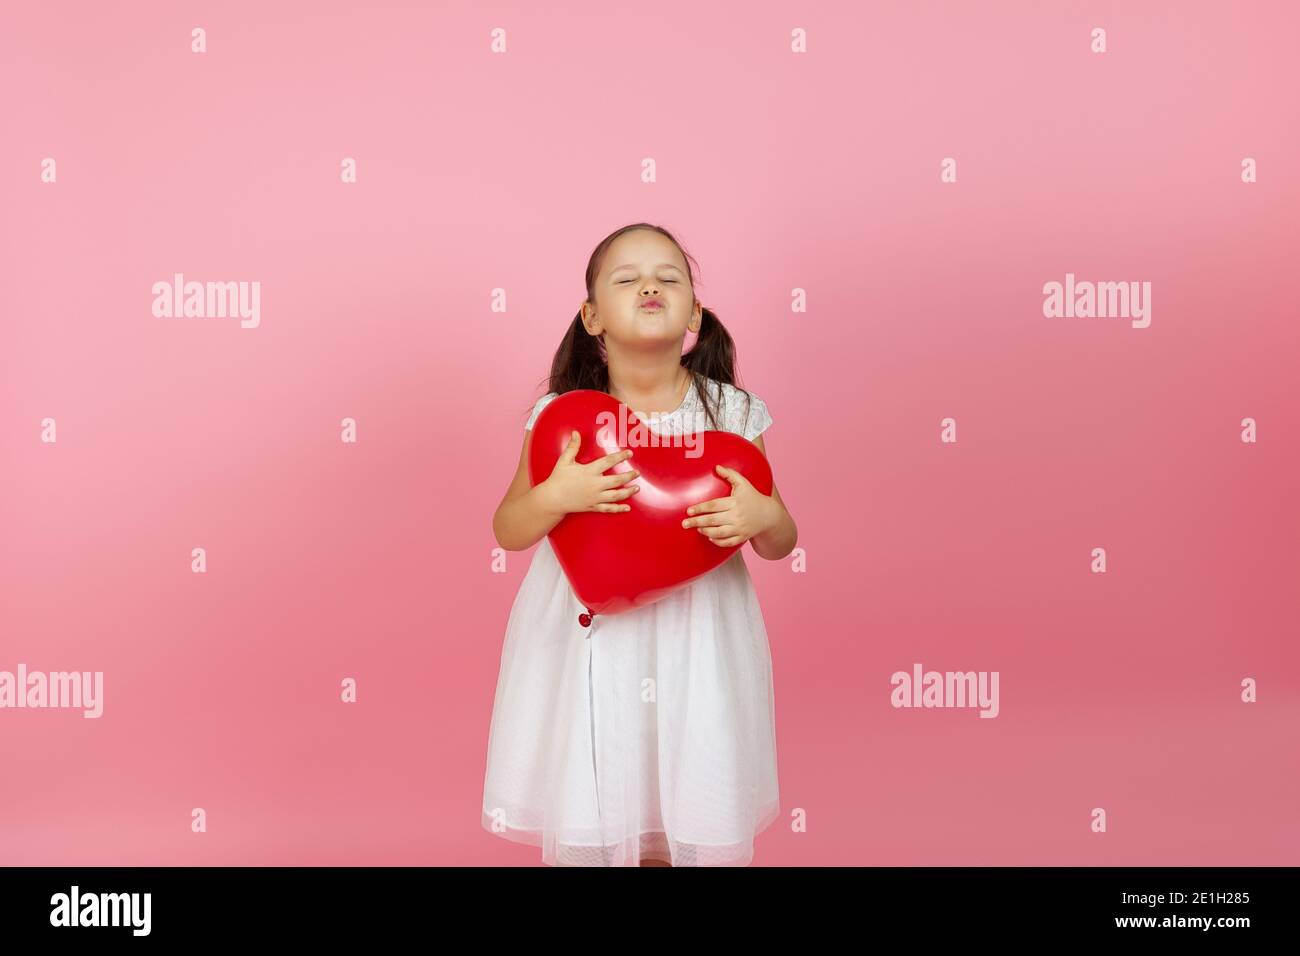 Ein Mädchen mit geschlossenen Augen in einem weißen Kleid hält einen roten Ballon in Form eines Herzens und bläst einen Kuss, isoliert auf einem rosa Hintergrund Stockfoto